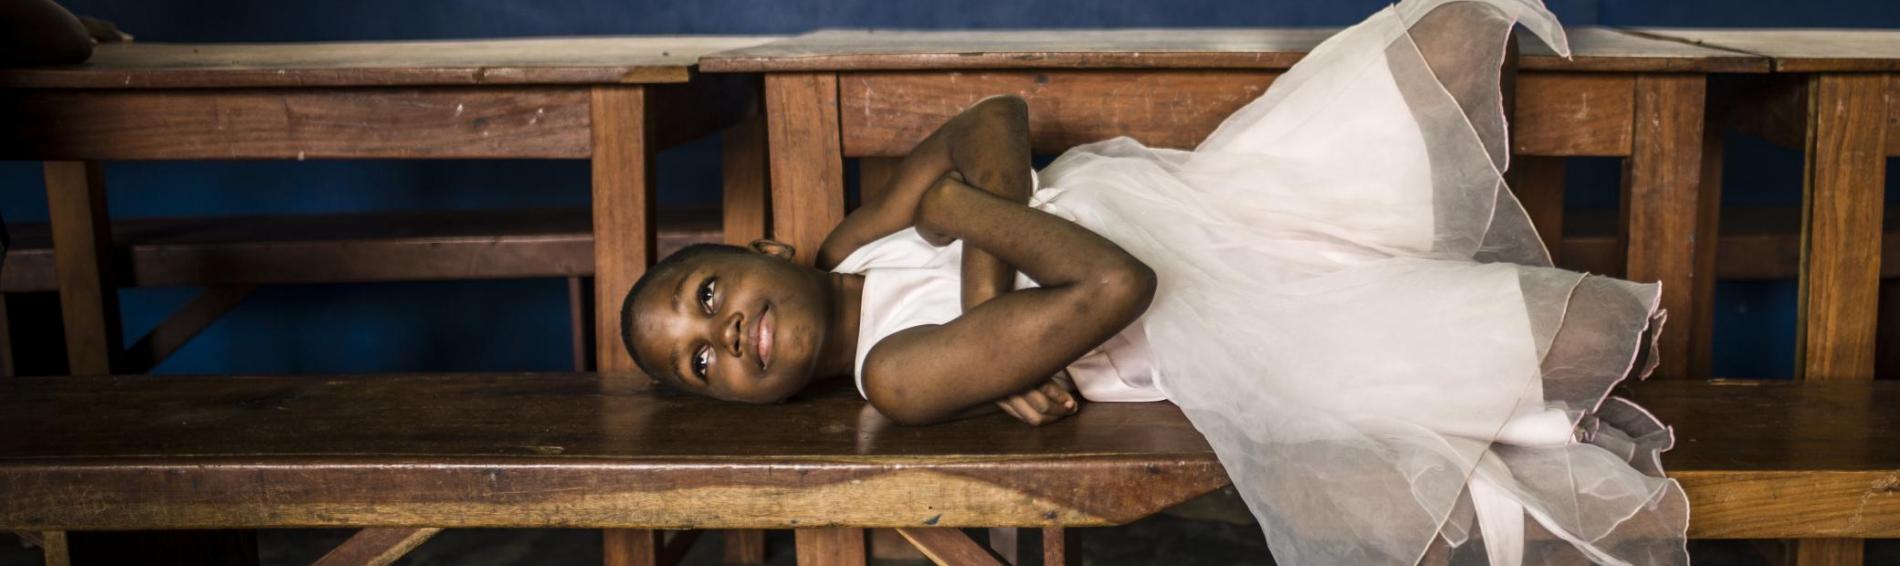 Een meisje uit Benin ligt uitgestrekt op een houten schoolbank. Ze draagt een wit zomerjurkje, heeft de armen gekruist over haar borst en tilt haar hoofd op. Haar blik lijkt licht geamuseerd.